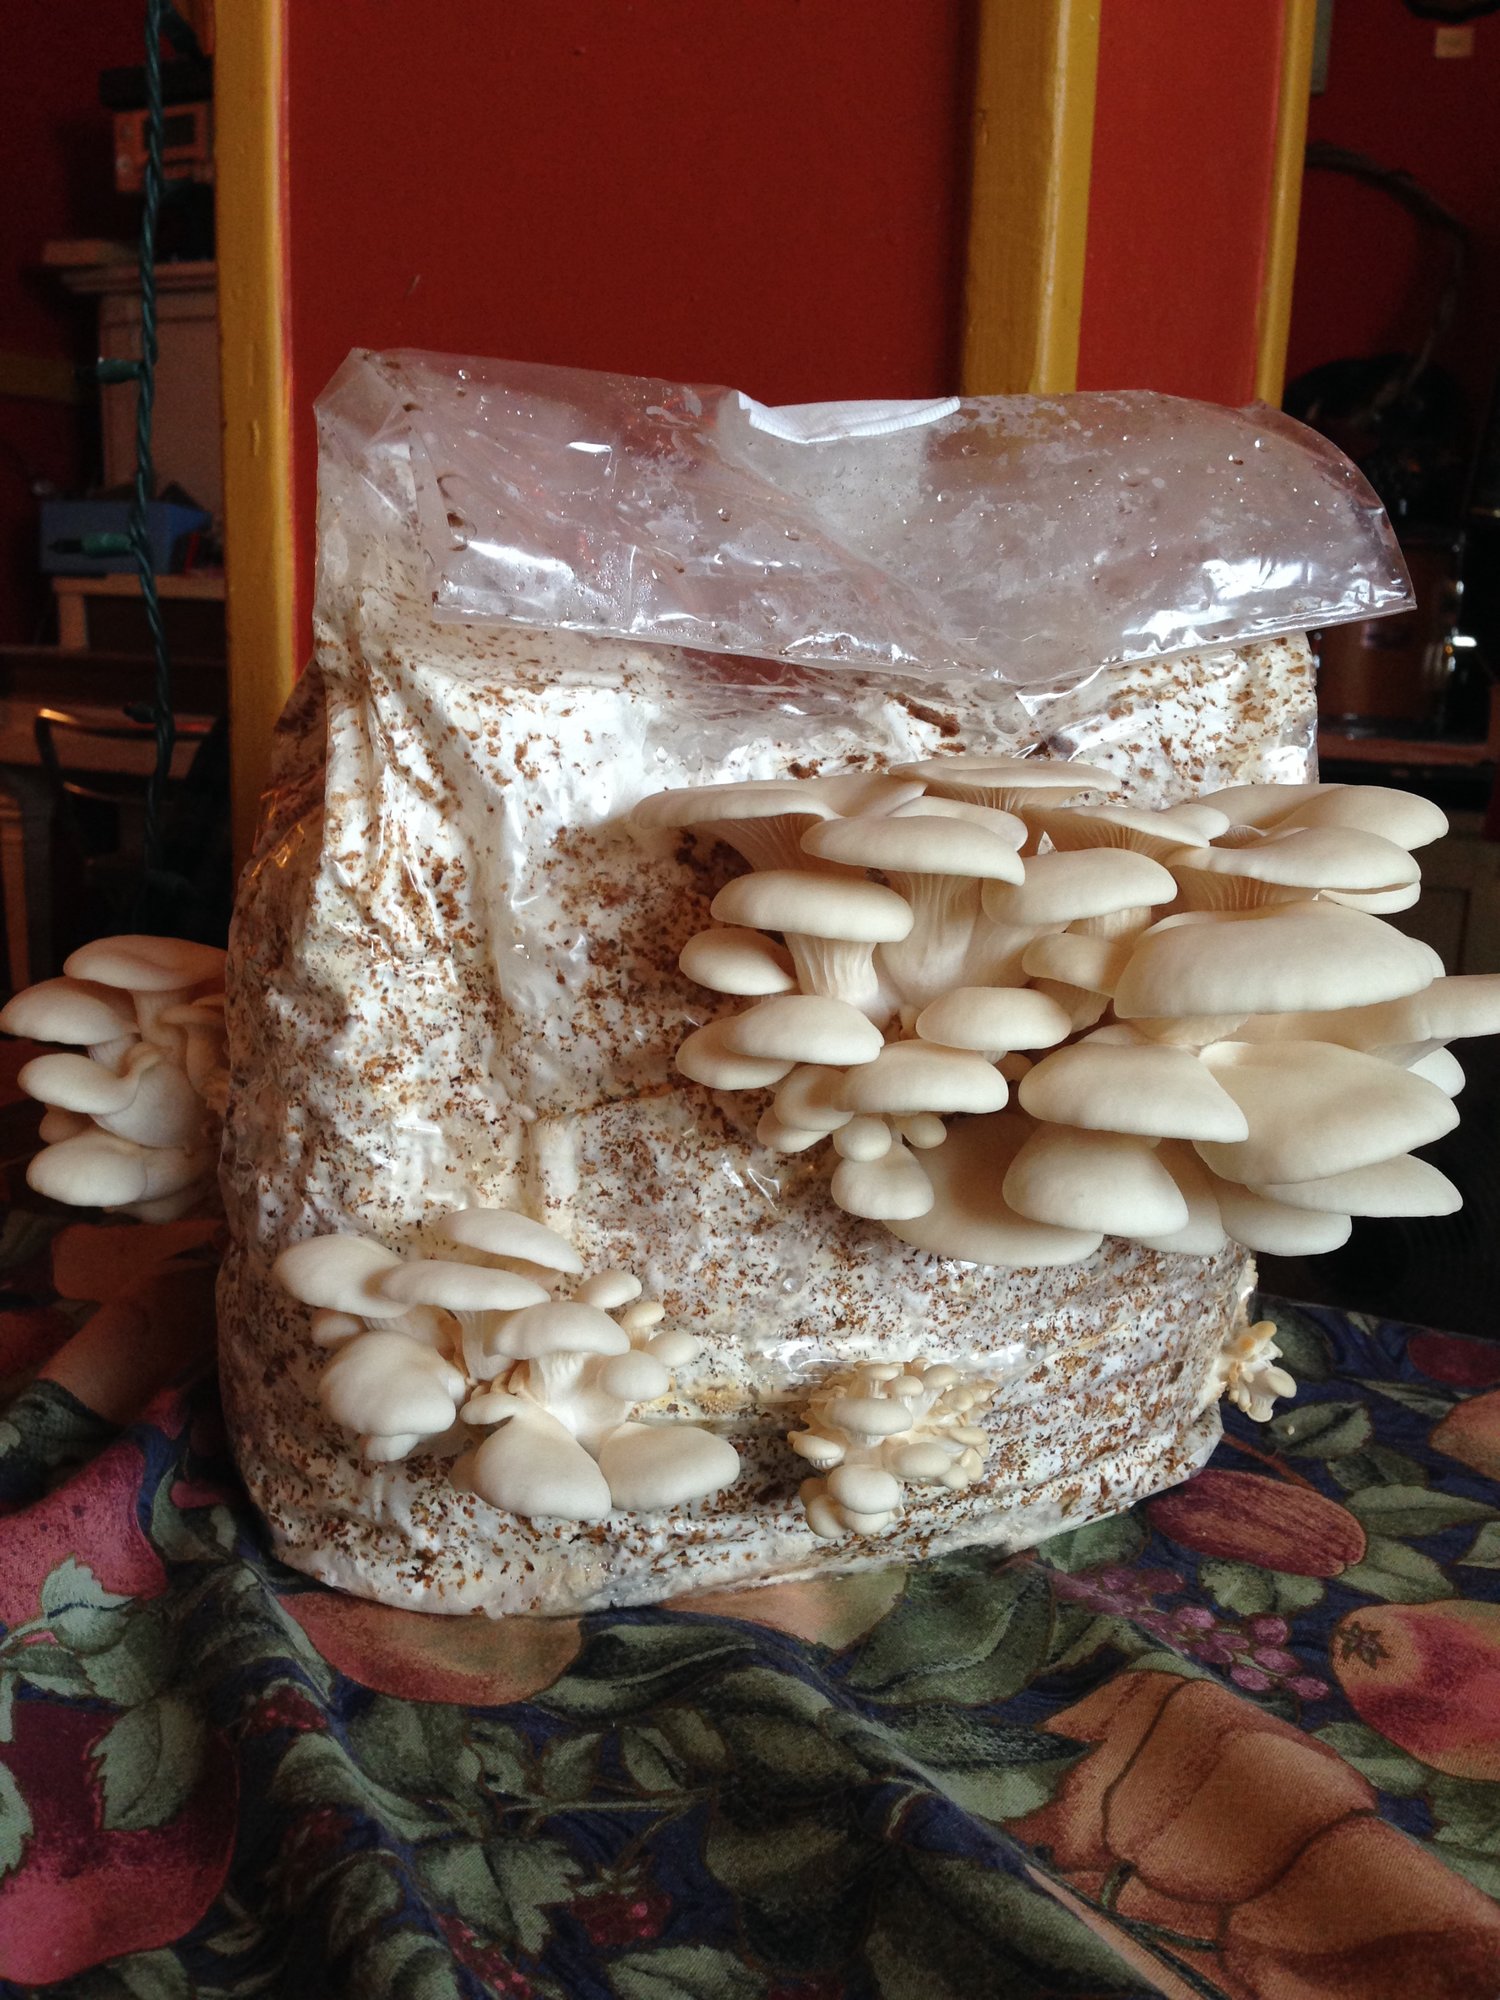 Image of a mushroom grow kit